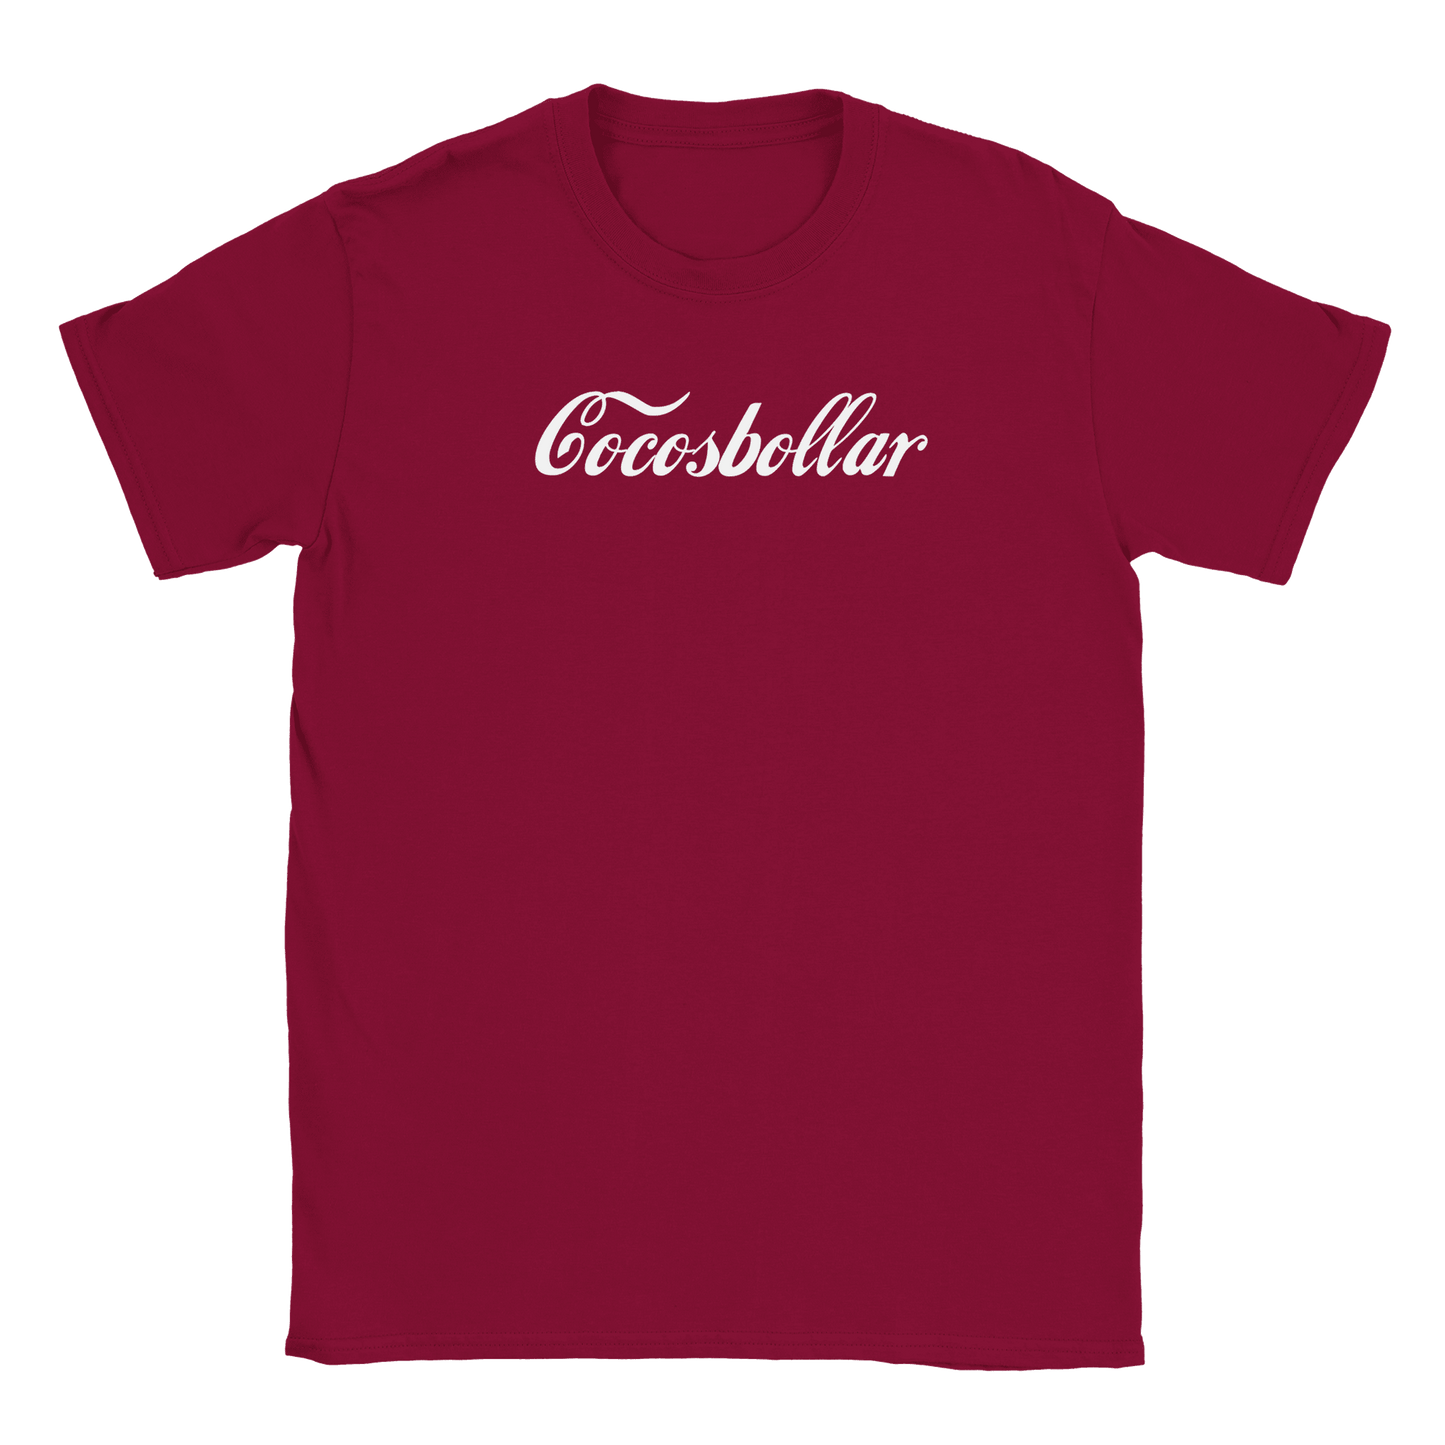 Cocosbollar - T-shirt Mörkröd